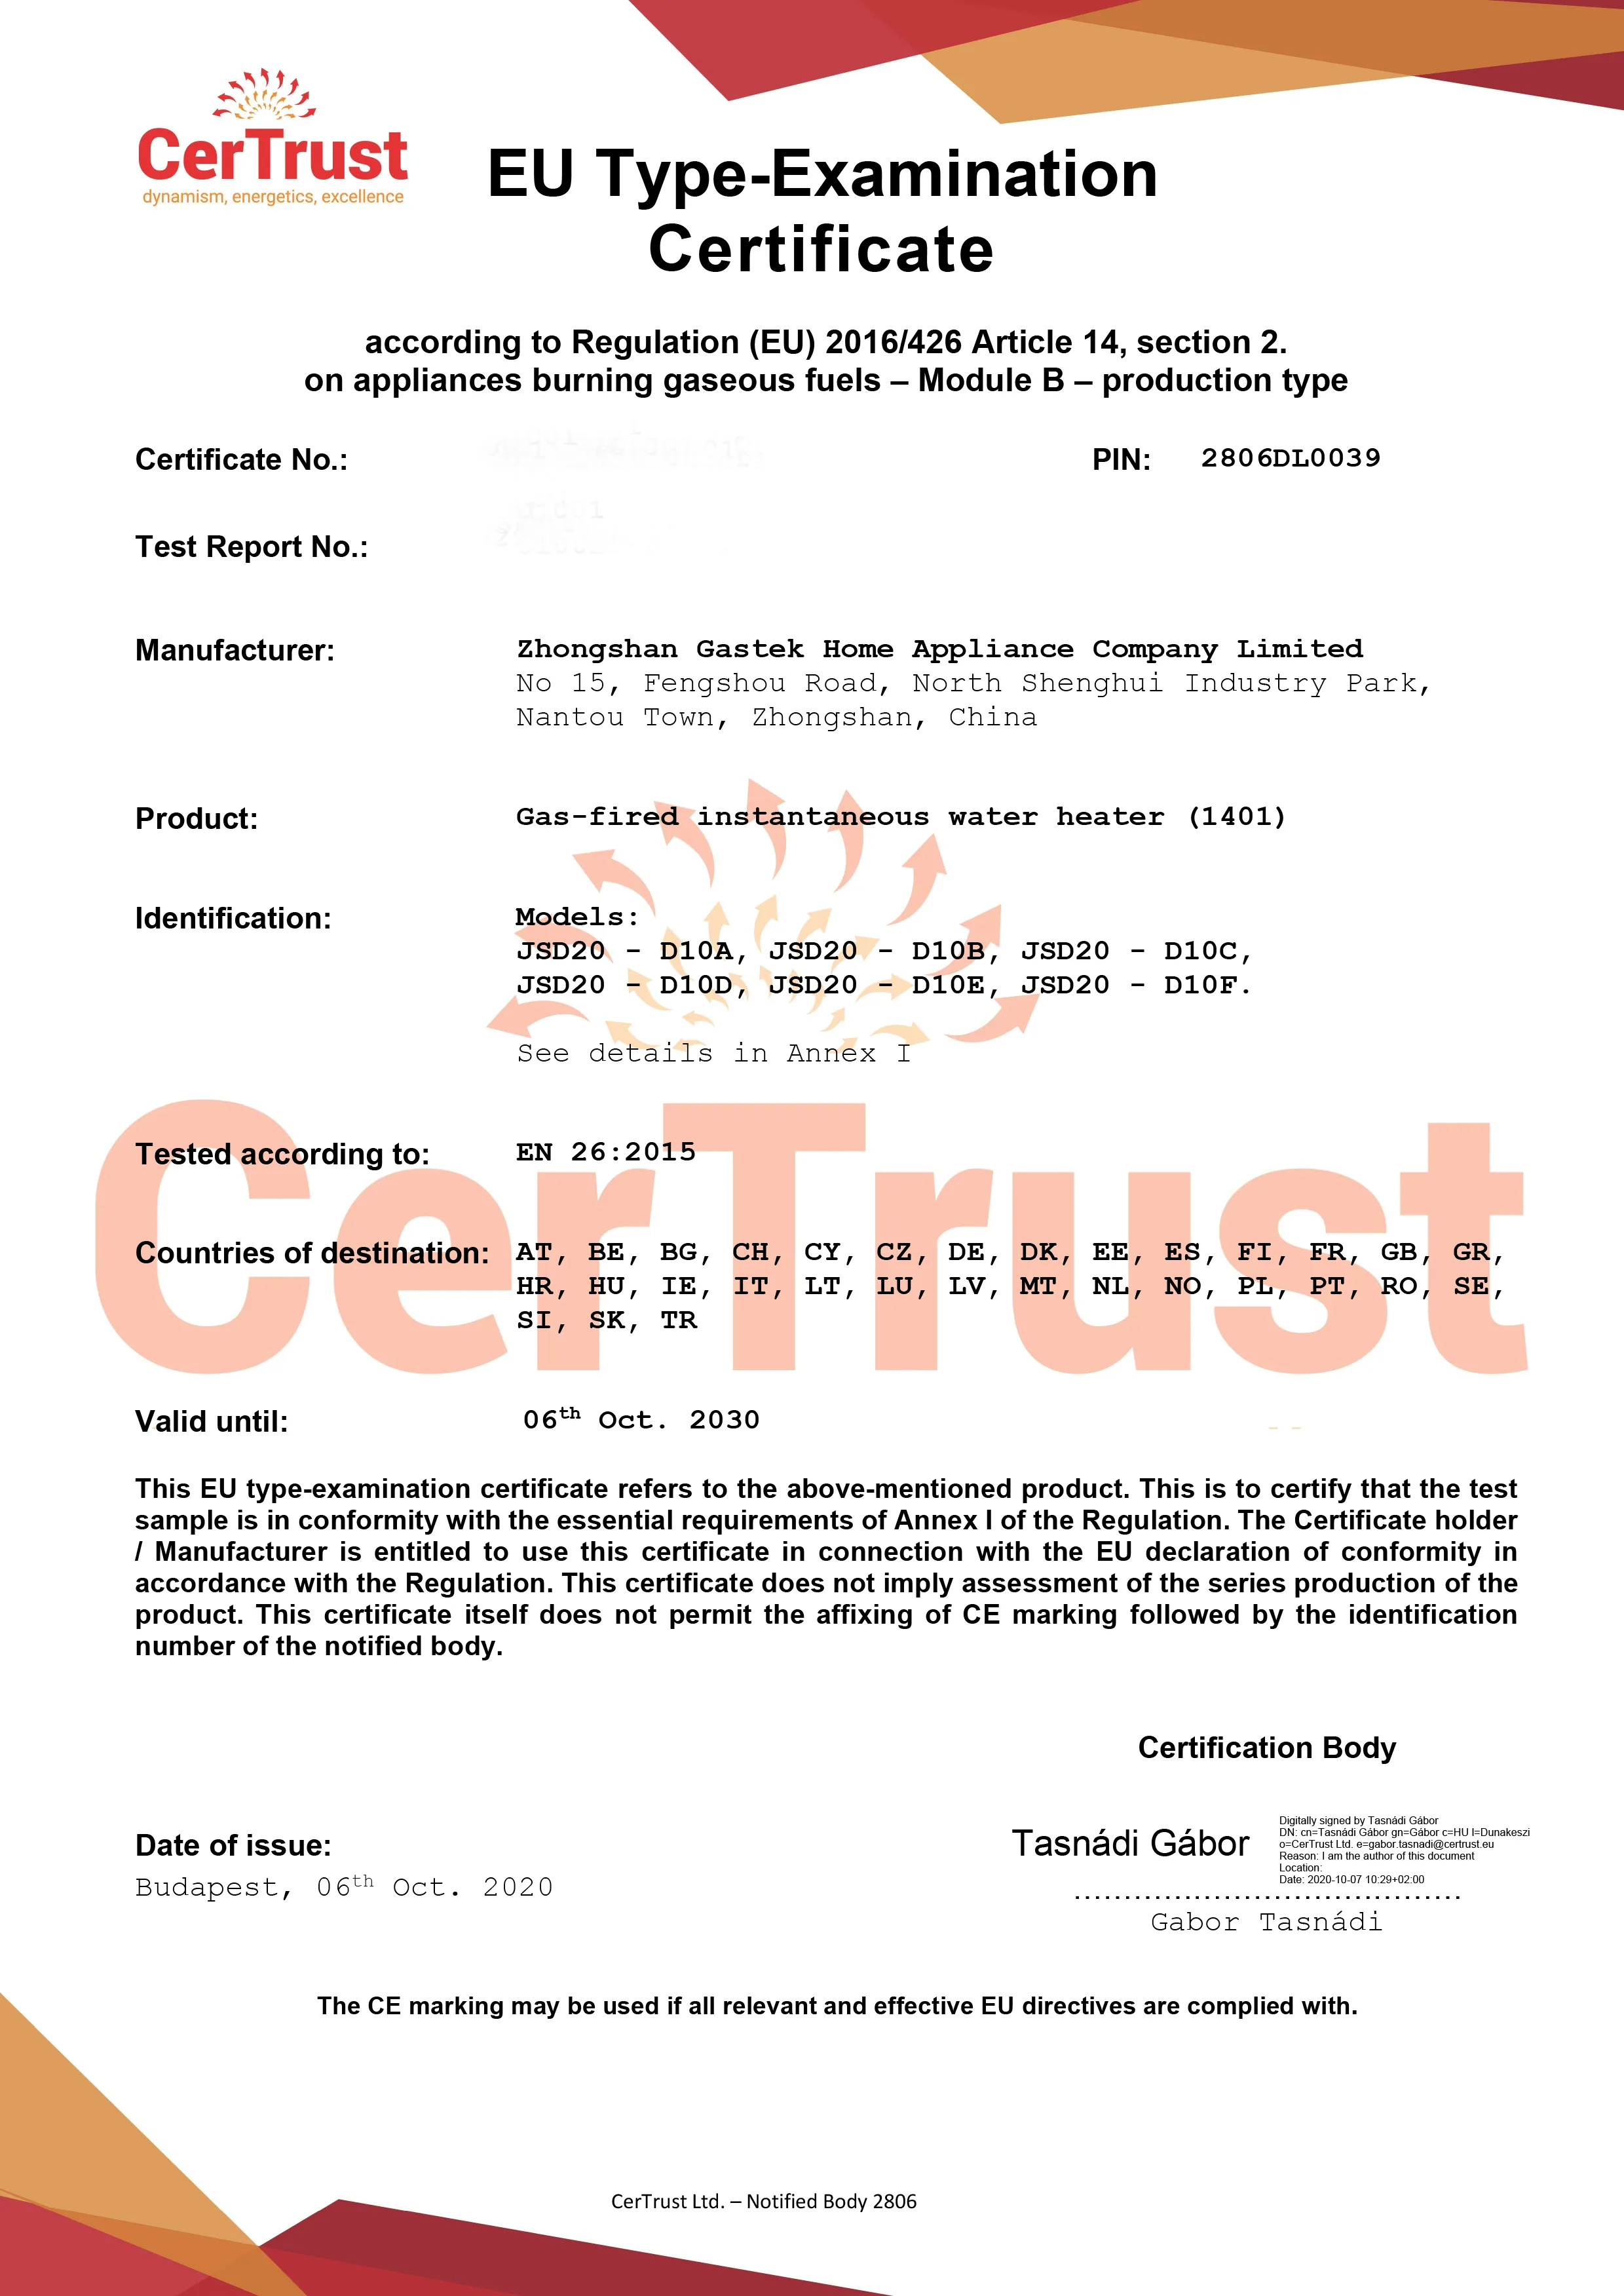 Гастек го доби CE сертификатот за бојлер на гас во овој октомври